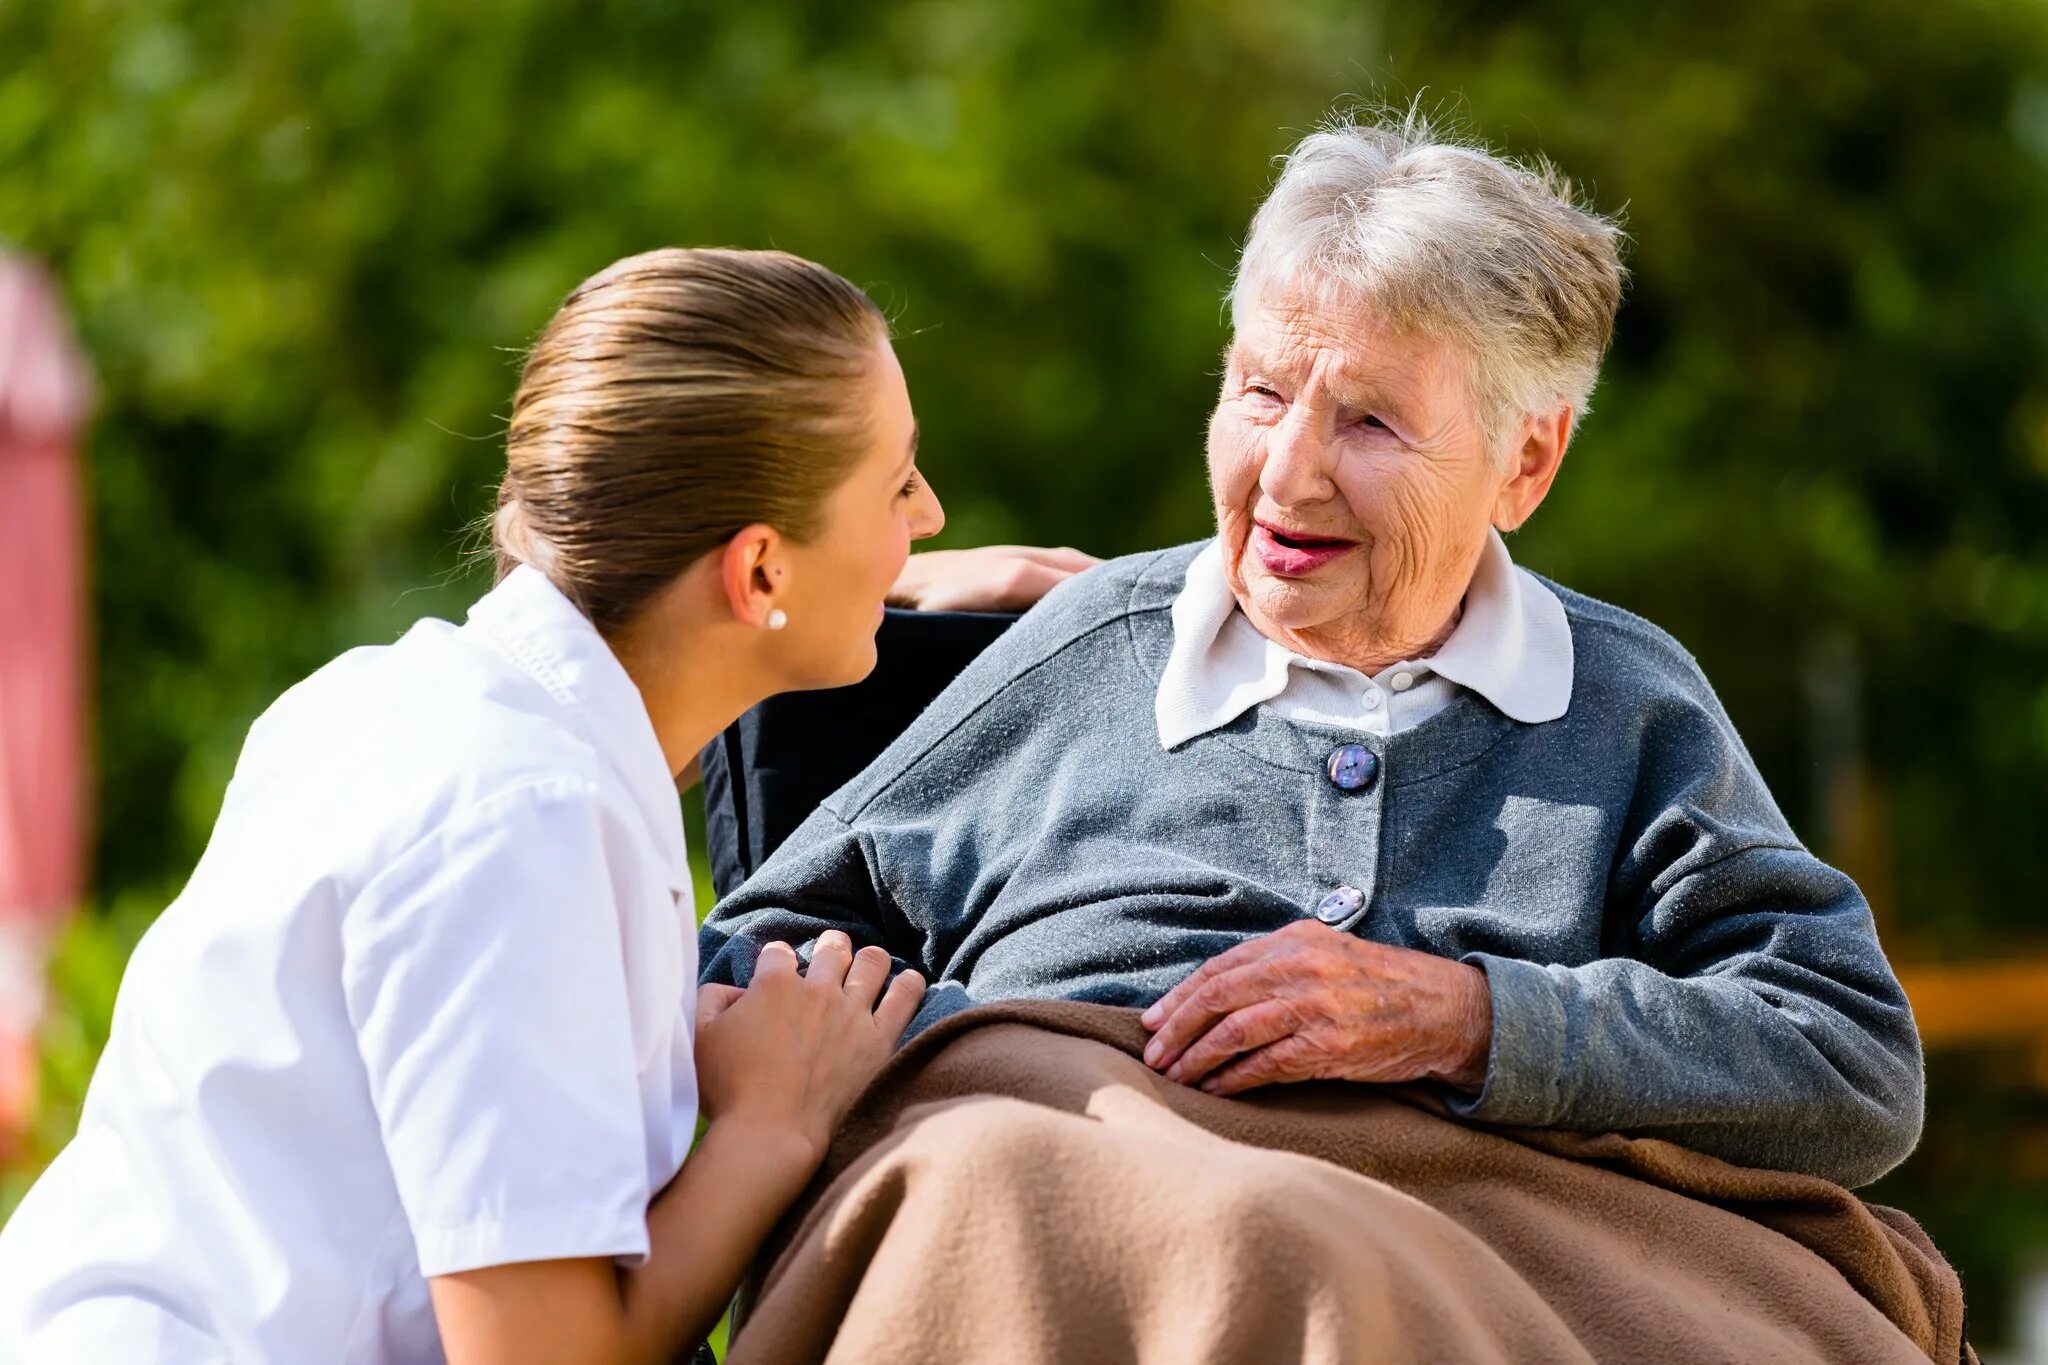 Fill in burst senior charity. Пожилые люди. Забота о пожилых людях. Общение с пожилыми людьми. Разговор с пожилым человеком.